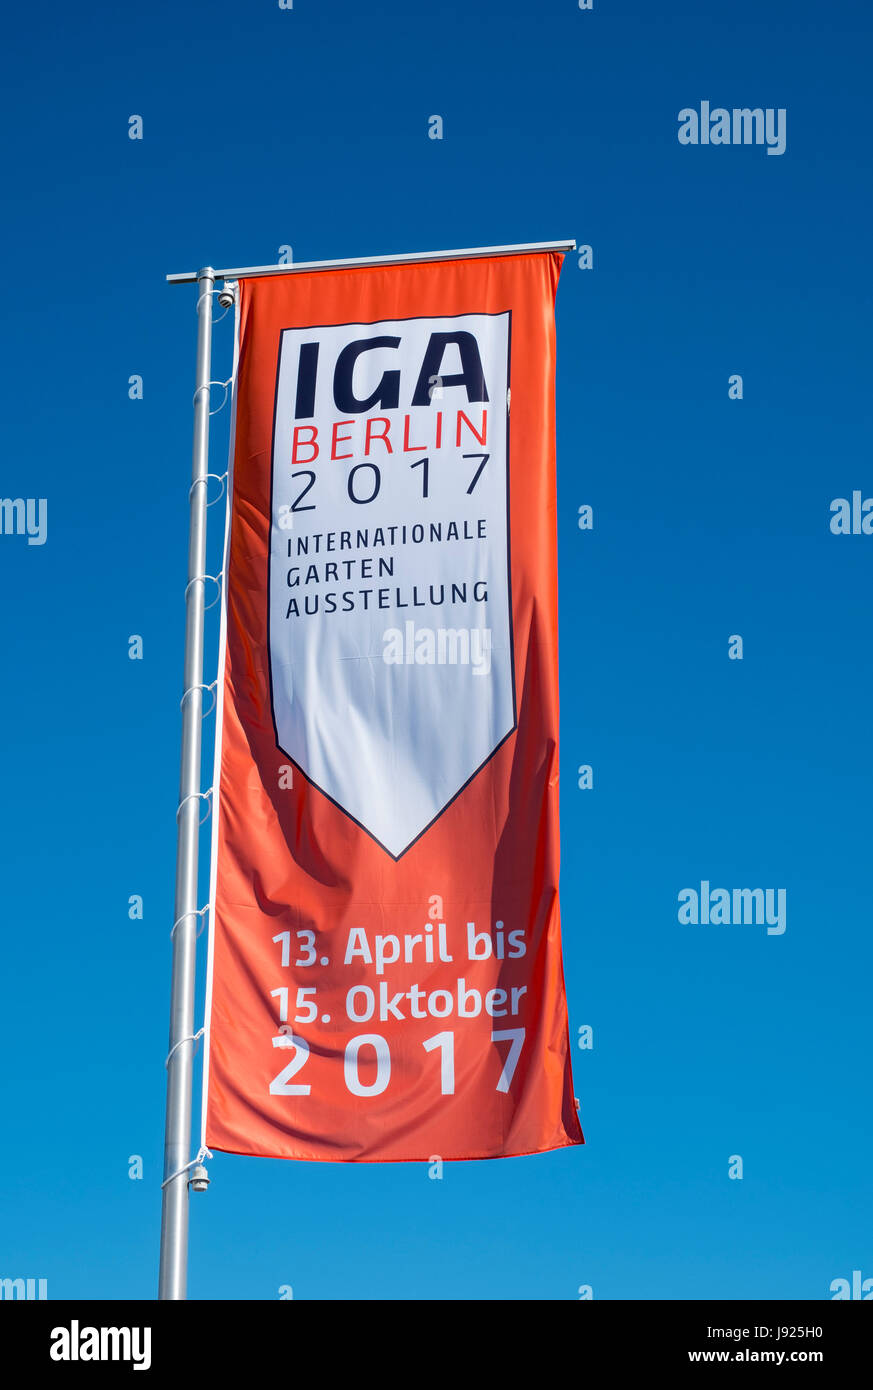 IGA 2017 internationales Gartenfestival (internationale Garten Ausstellung) in Berlin, Deutschland Stockfoto